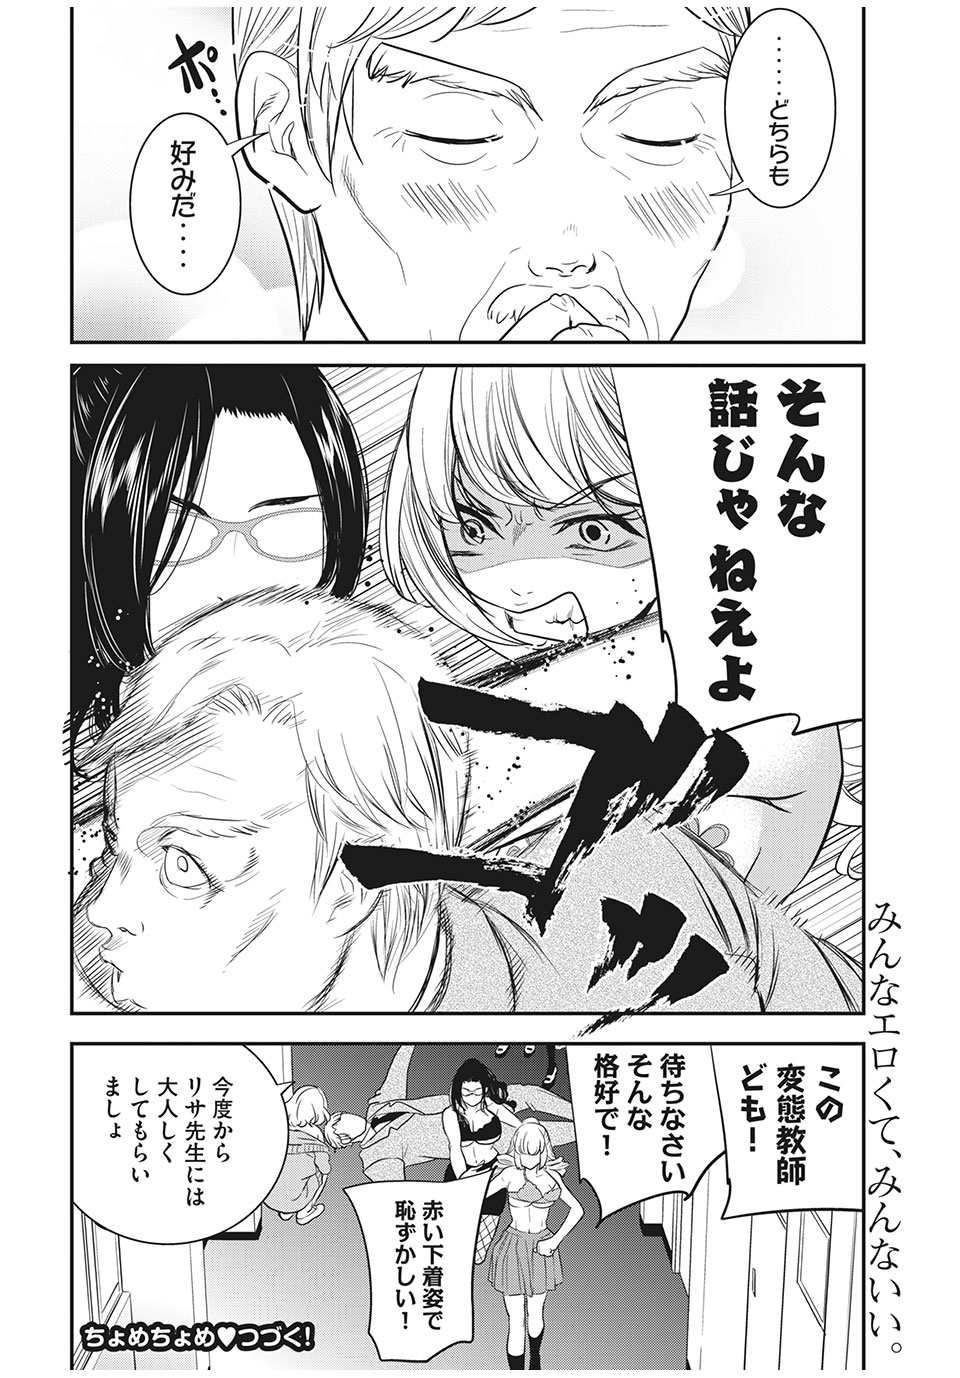 Eigo ×× Sensei - Chapter 8 - Page 12